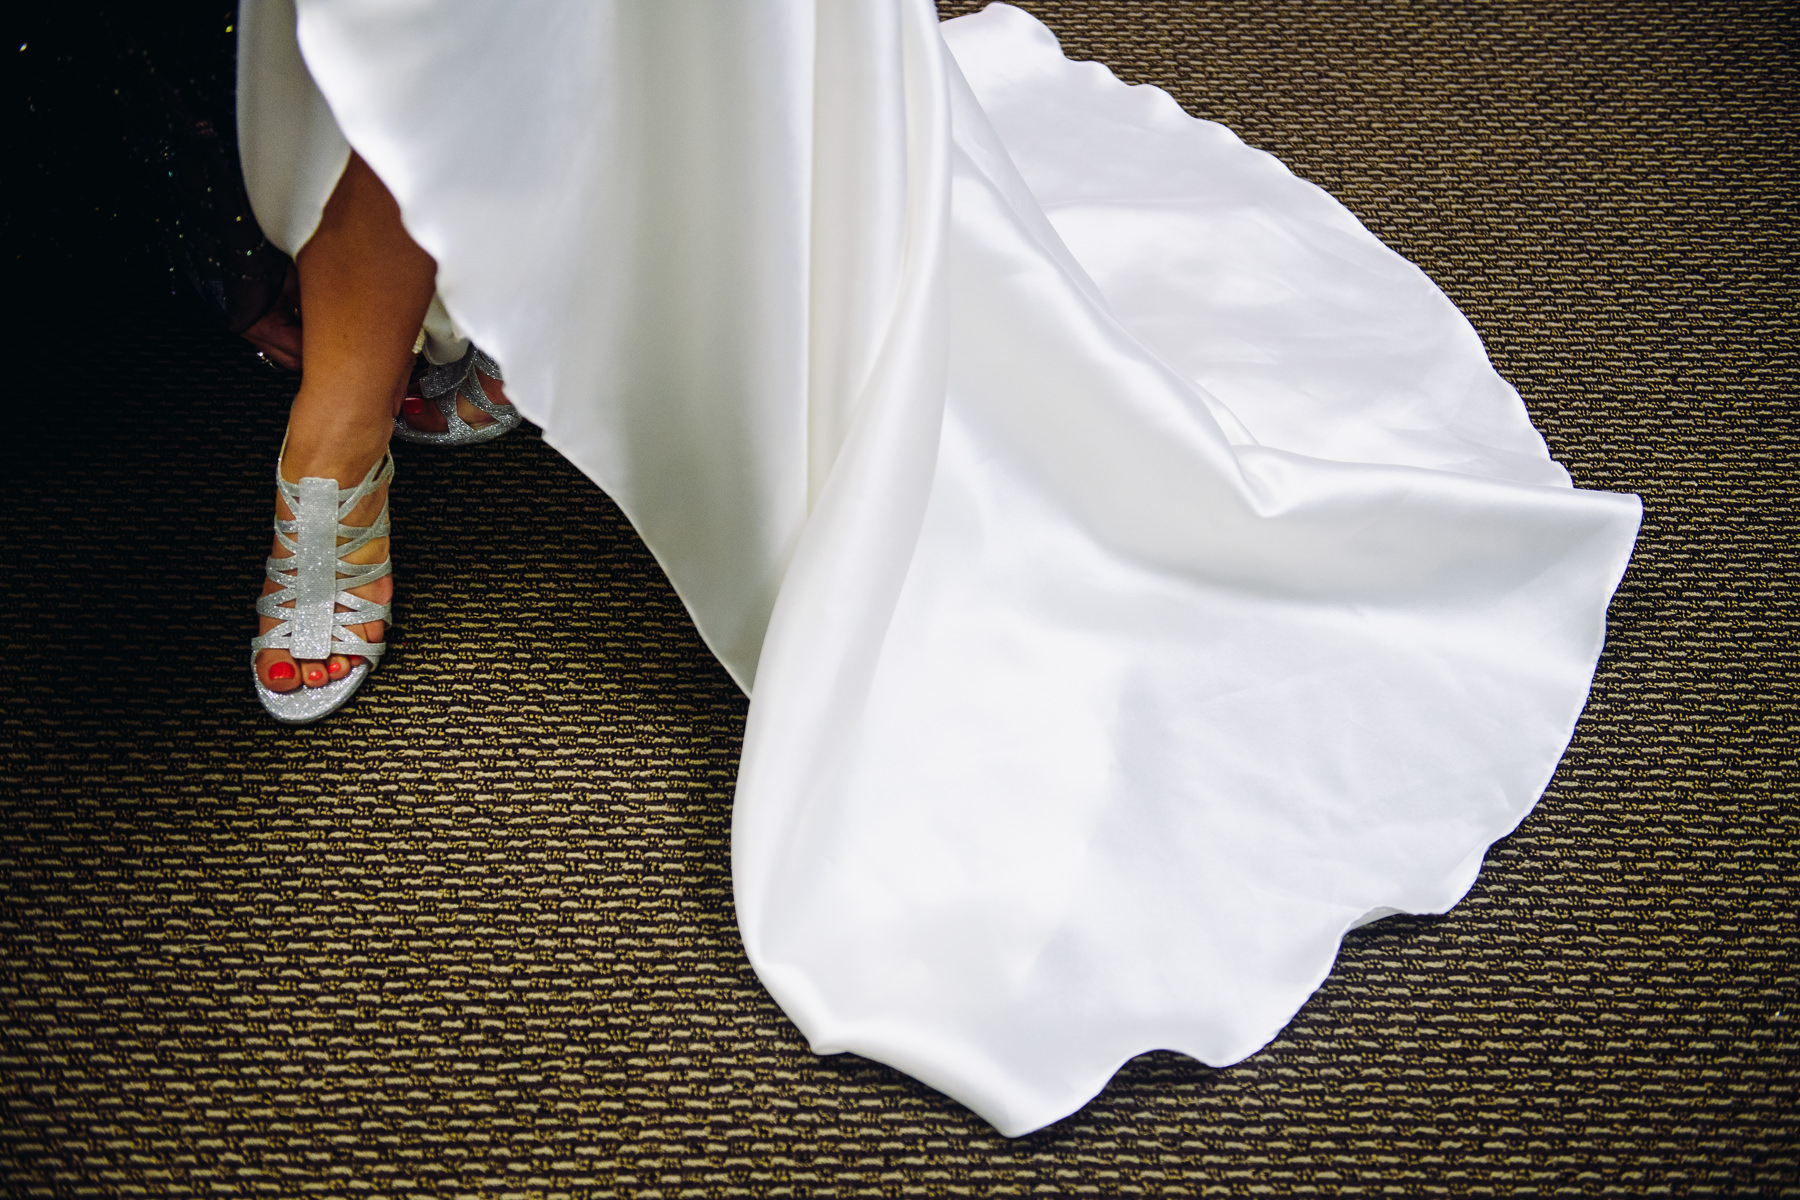 St. Joseph Catholic Church bride shoe photo